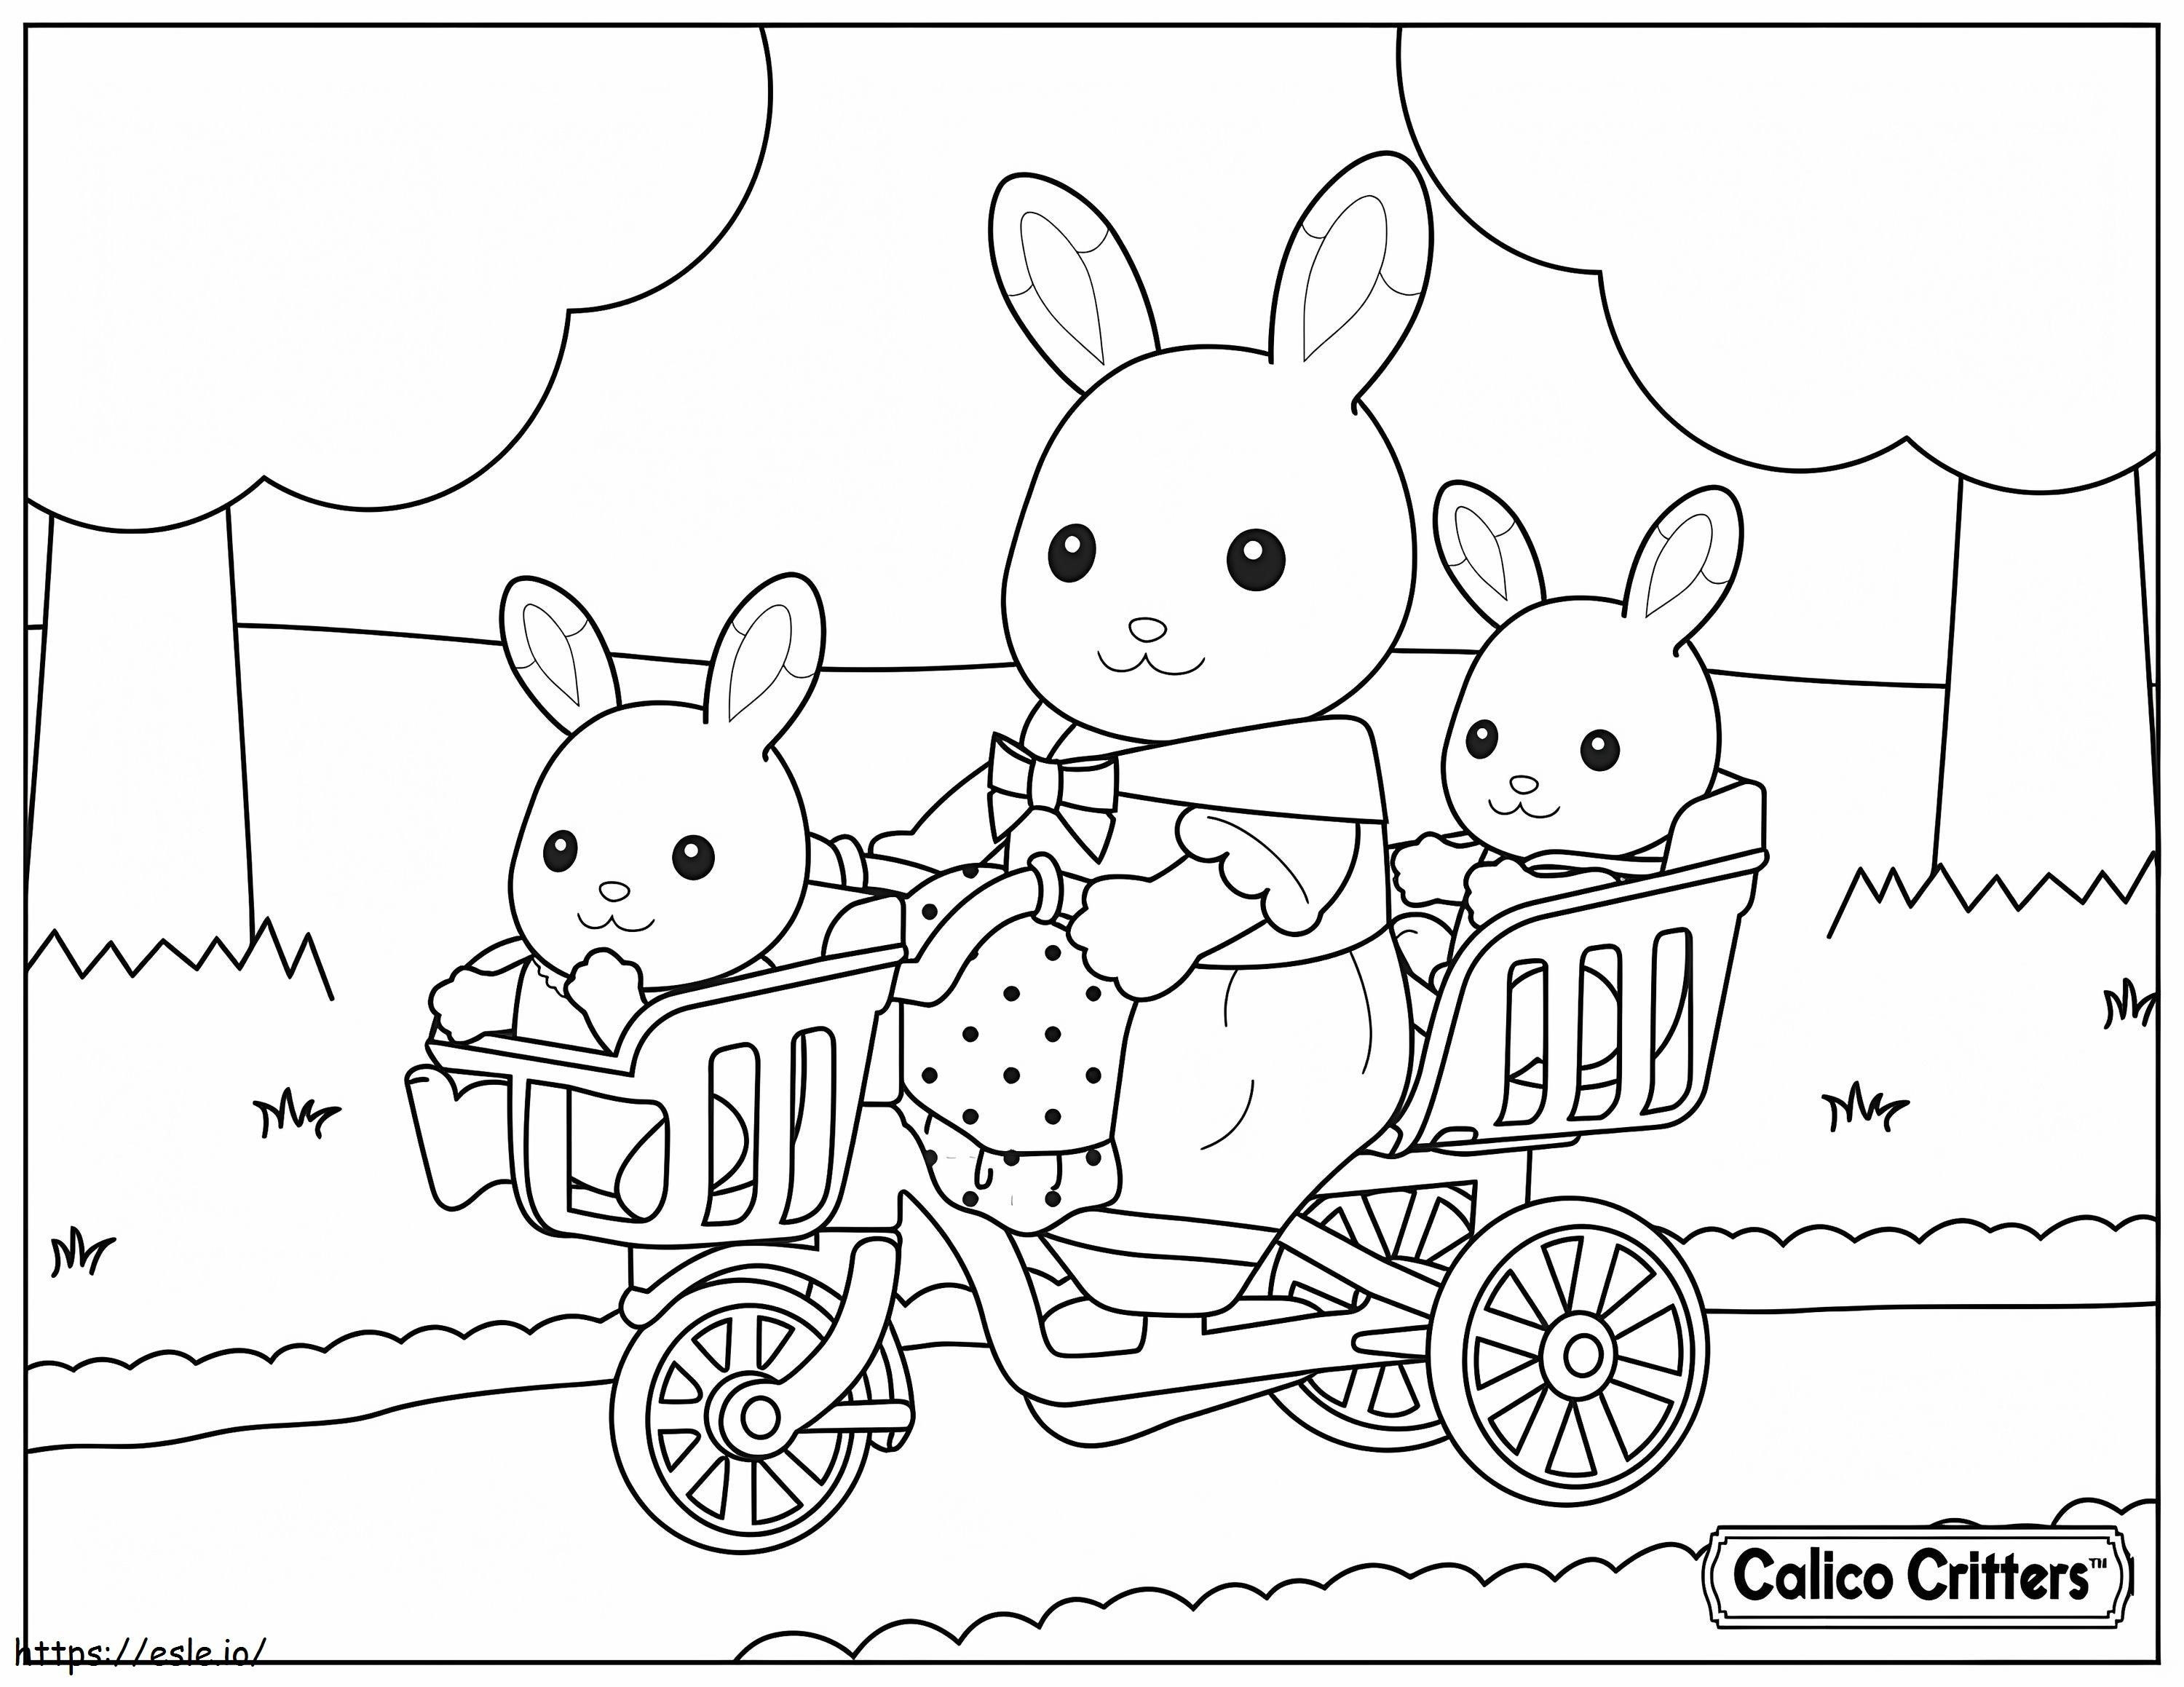  1515174989赤ちゃんの自転車を持つキャリコの生き物 ぬりえ - 塗り絵